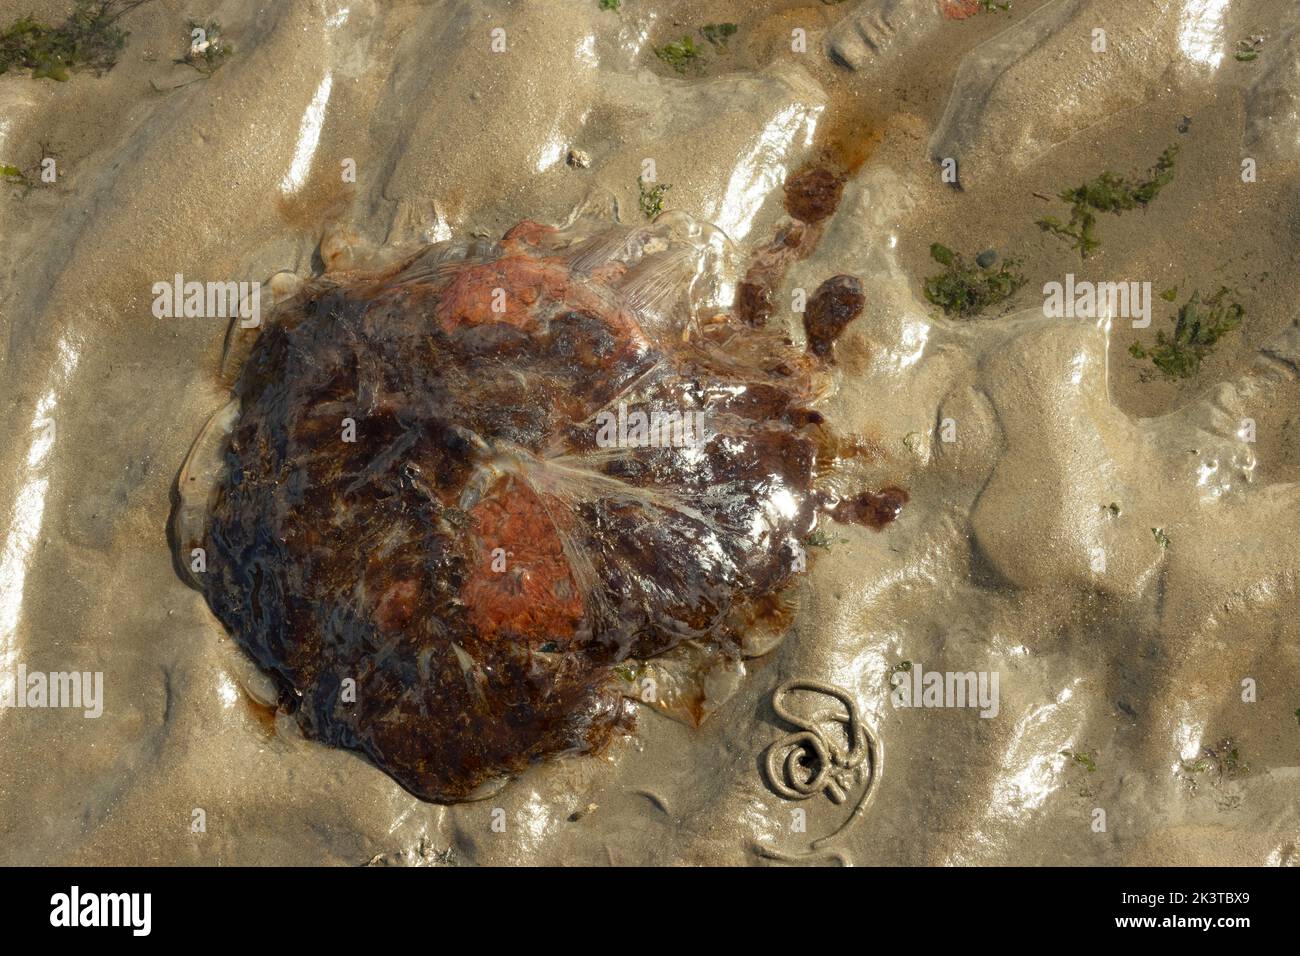 Der rötlich-braune Regenschirm einer Löwenmädchen-Qualle wurde durch die rückläufige Flut am Strand gestrandet. Bewaffnet mit mehr als 65 stechenden Tentakeln Stockfoto